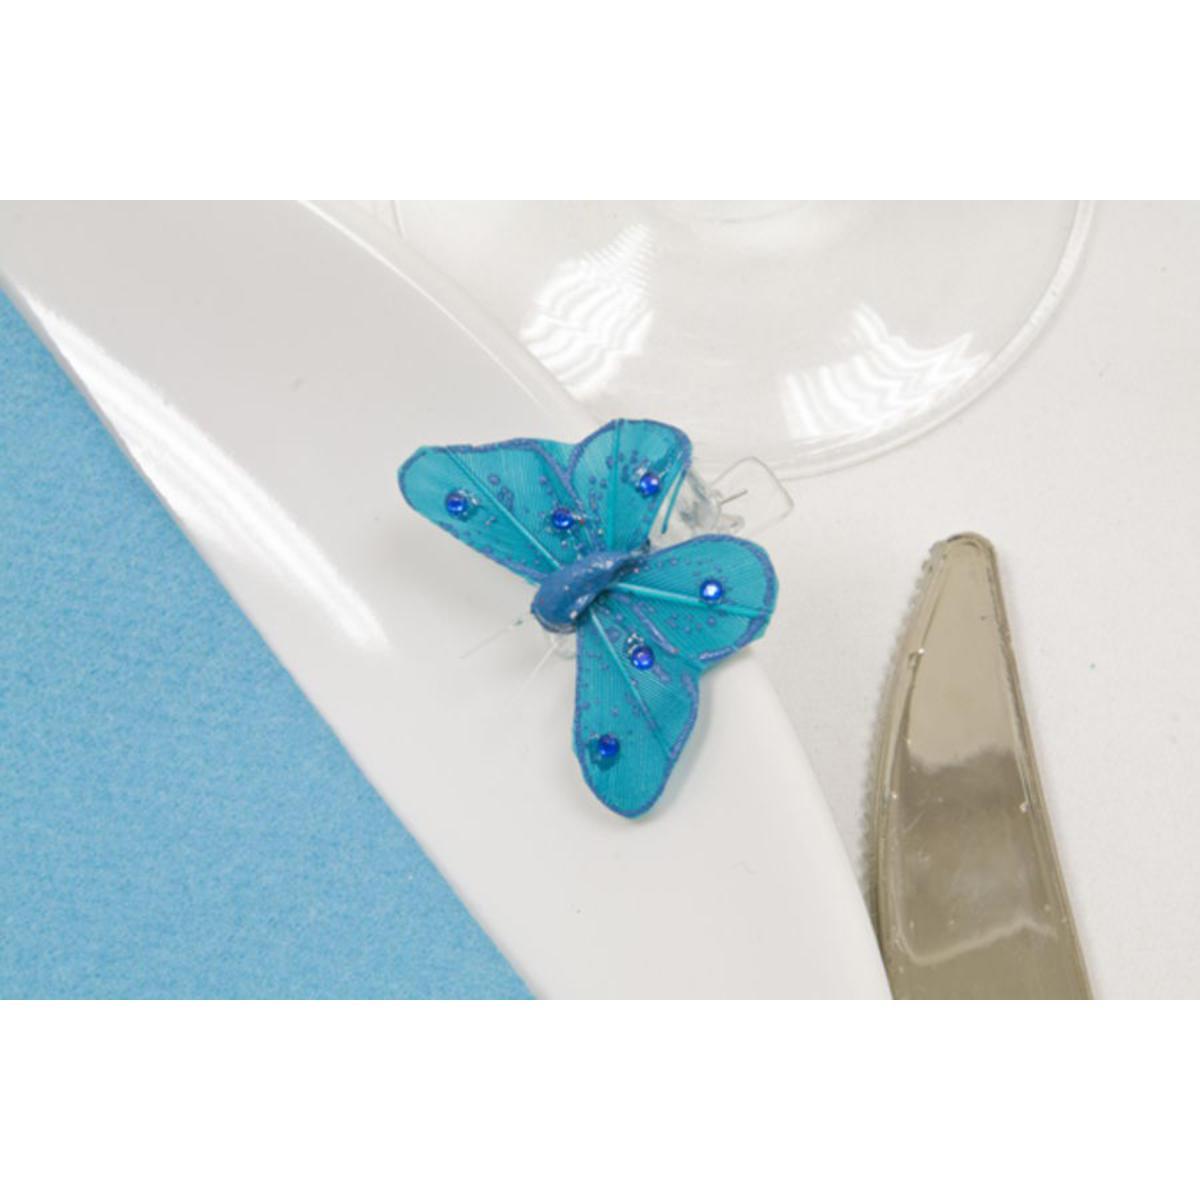 papillon sur pince + strASSIETTES x 4 (2,7 x 3,5cm) turquoise